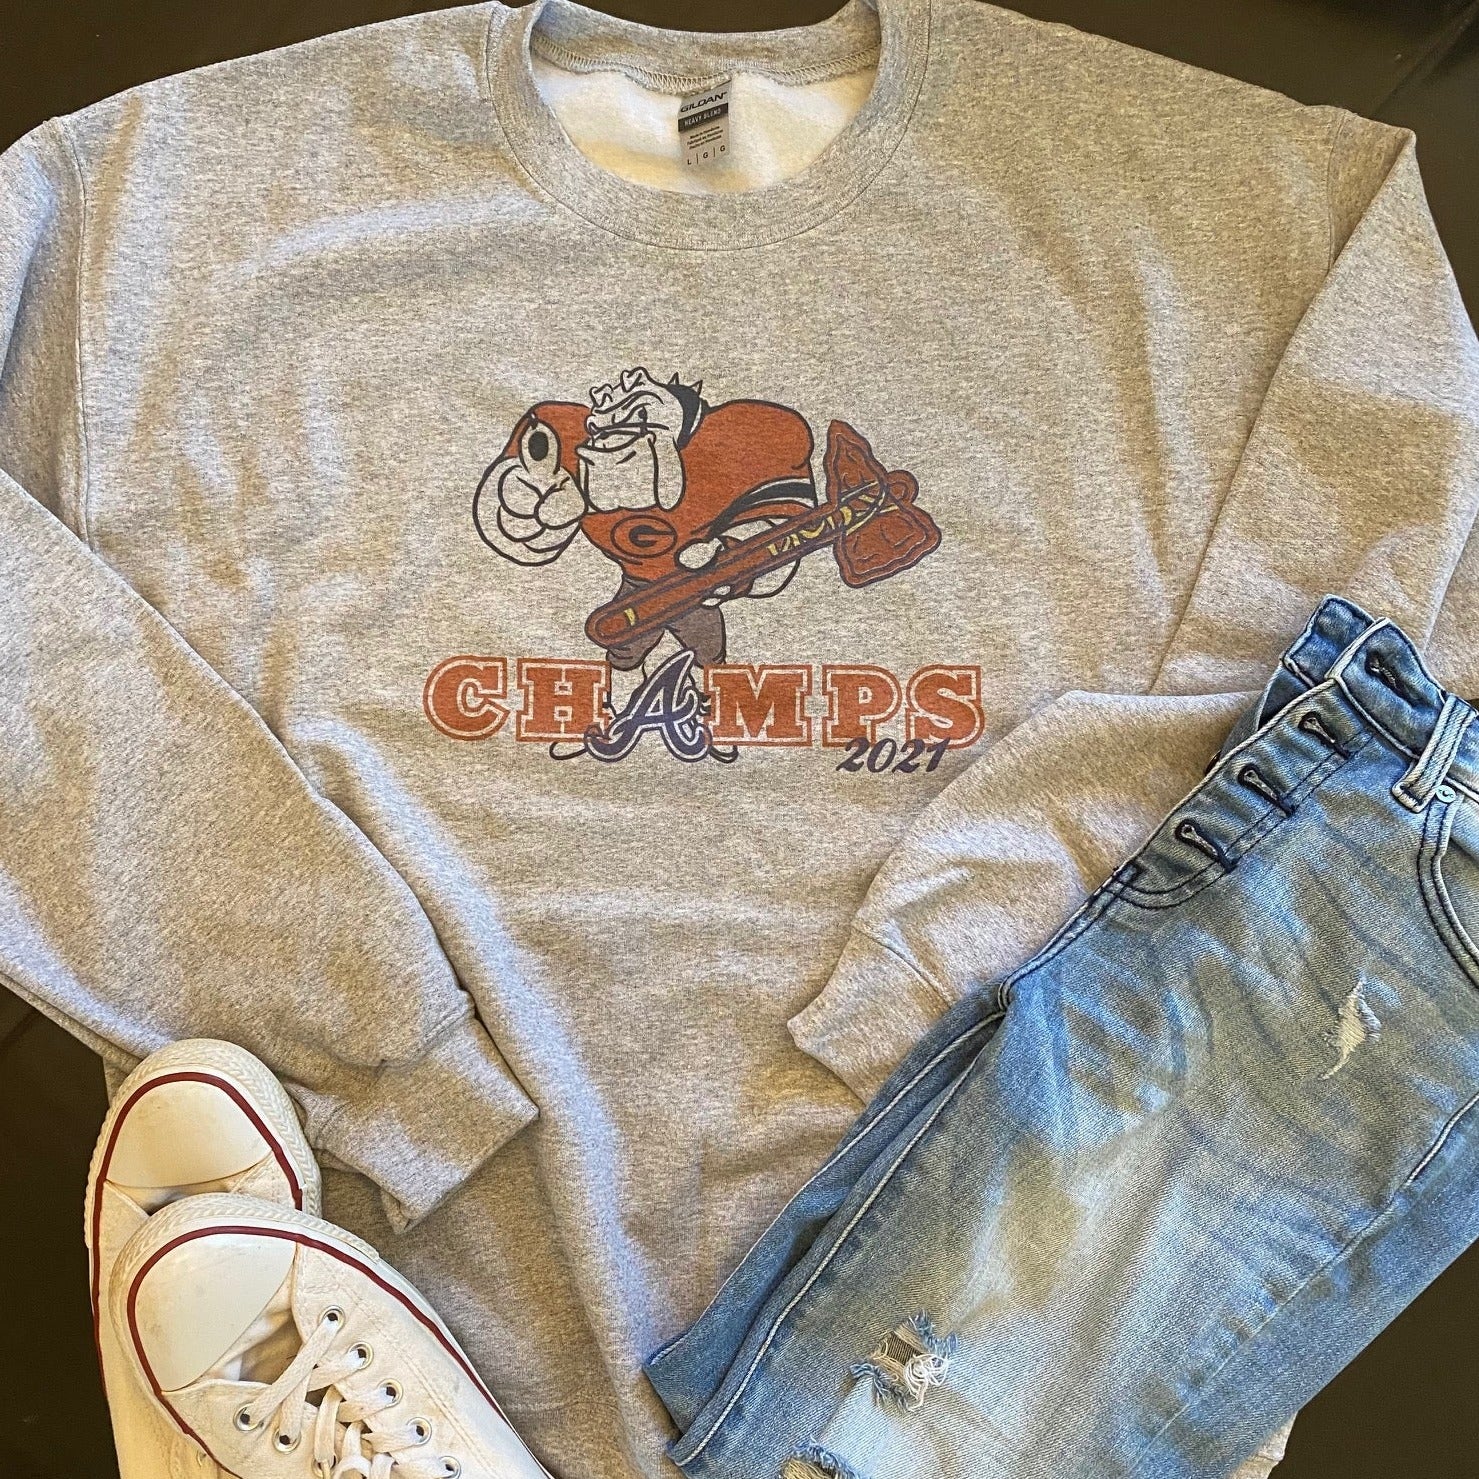 UGA/Braves Champs Shirt – RTTO Creations